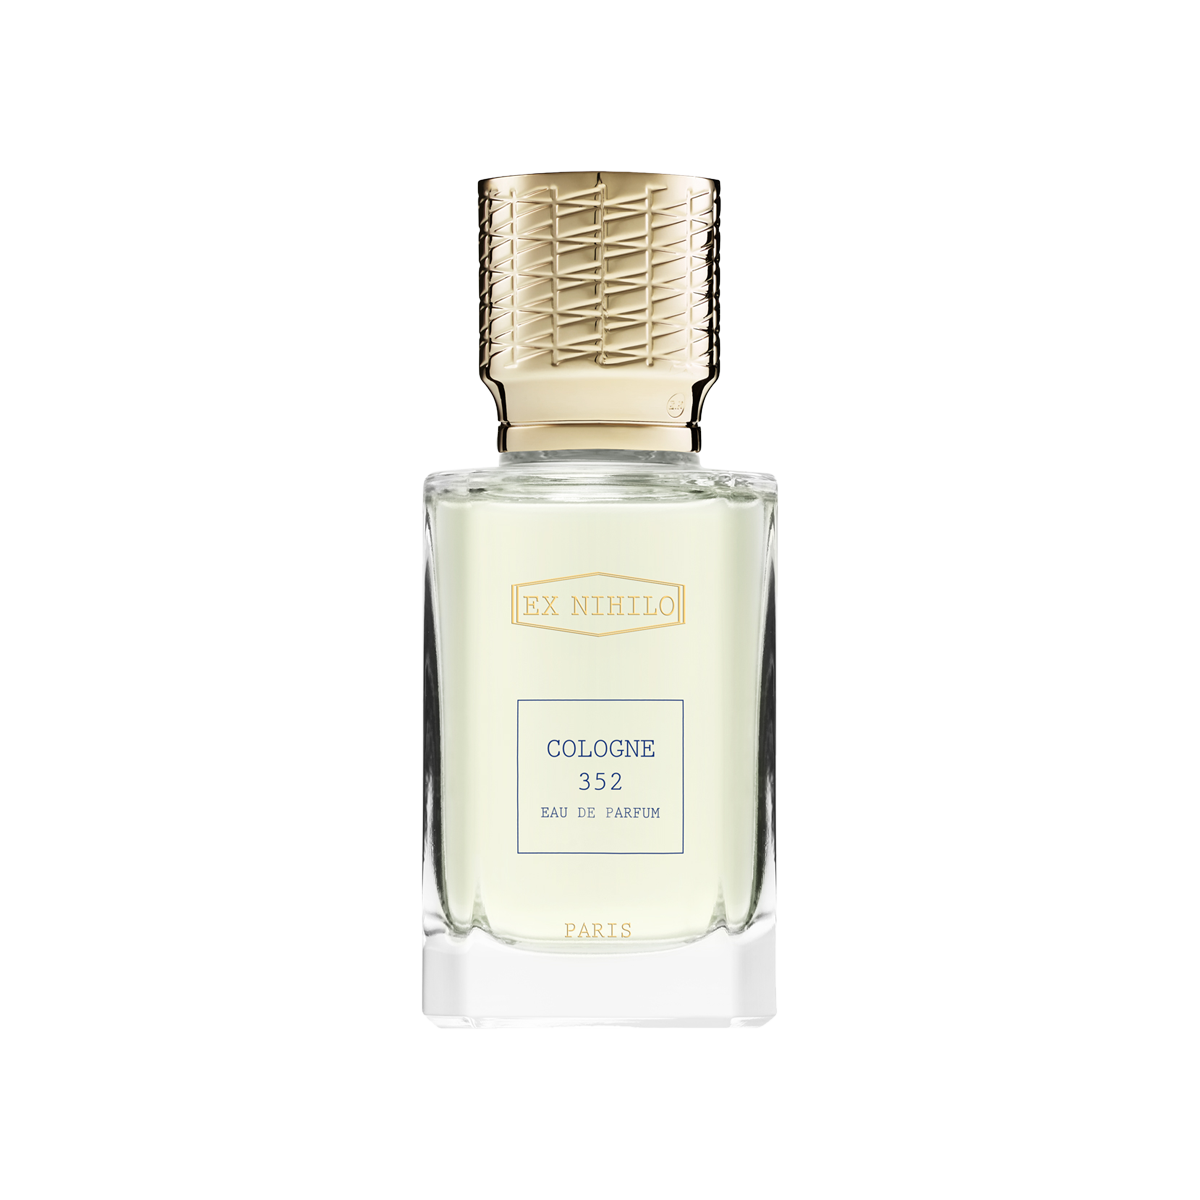 EX NIHILO - Cologne 352 Eau de Parfum